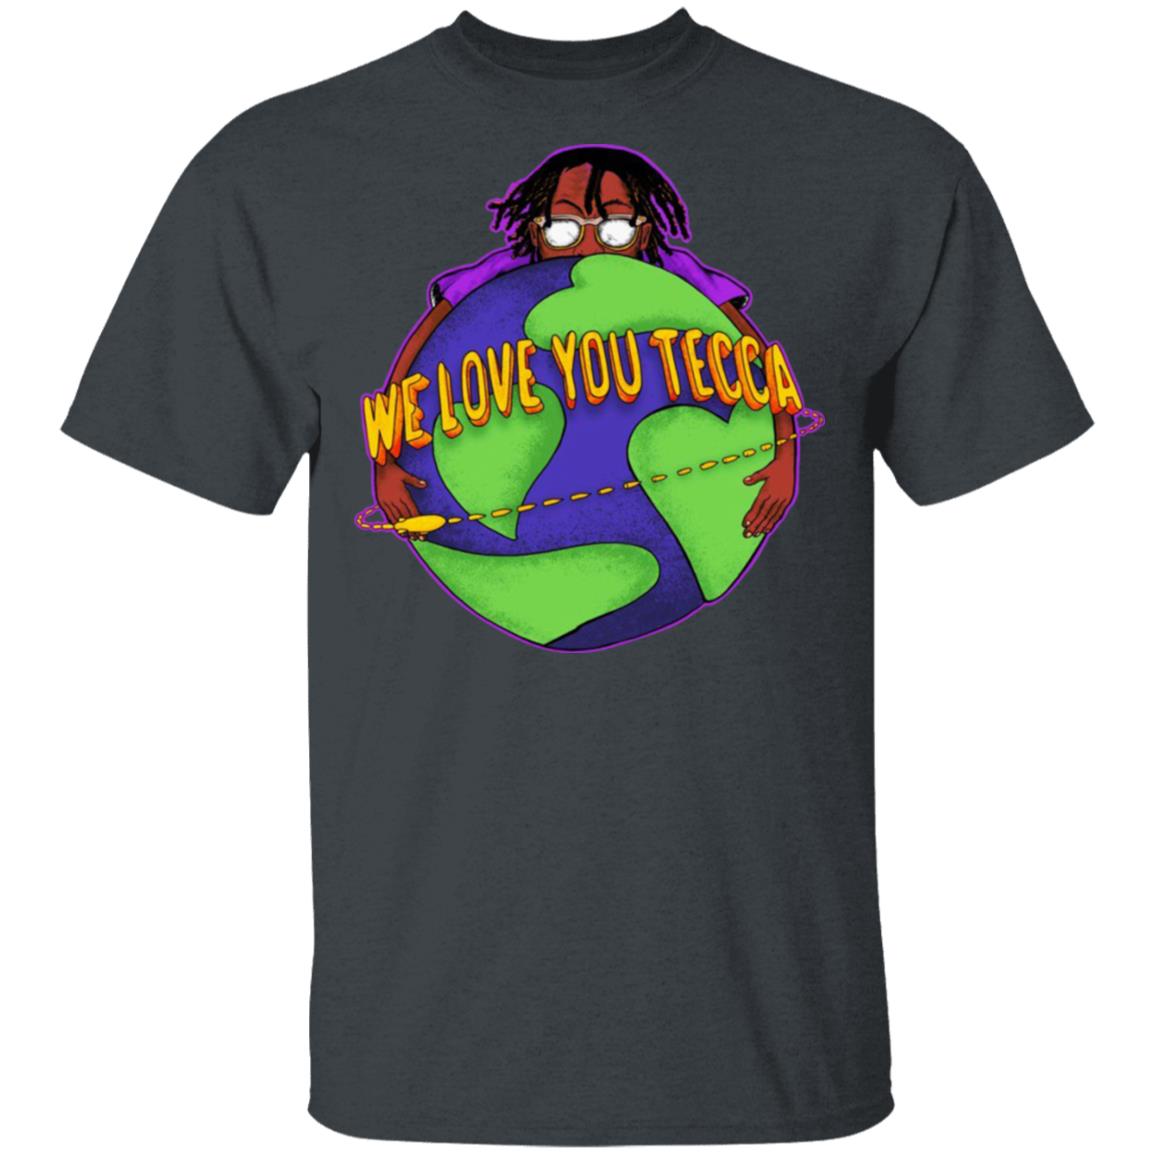 We Love You Tecca, Lil Tecca Fan Art & Gear Merch, T-Shirts, Hoodies, L...